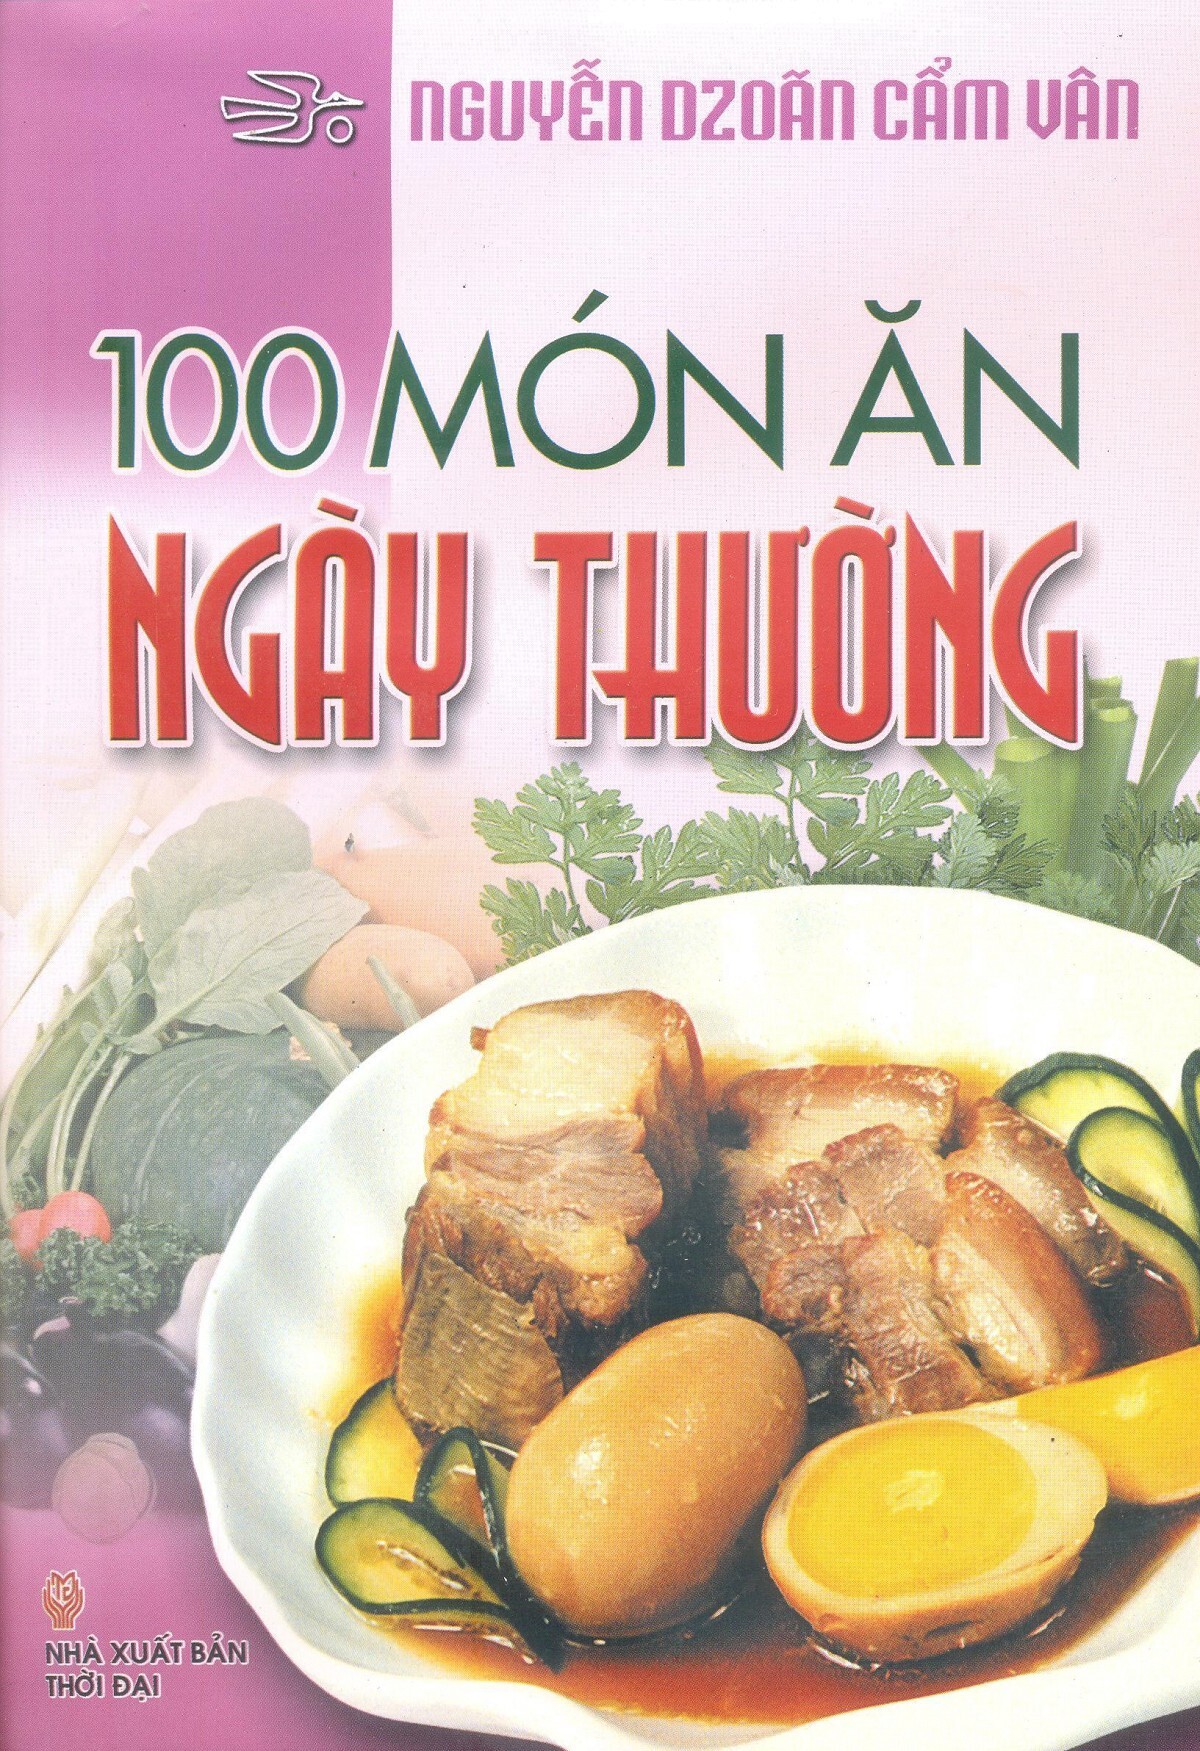 100 Món ăn ngày thường - Nguyễn Doãn Cẩm Vân 